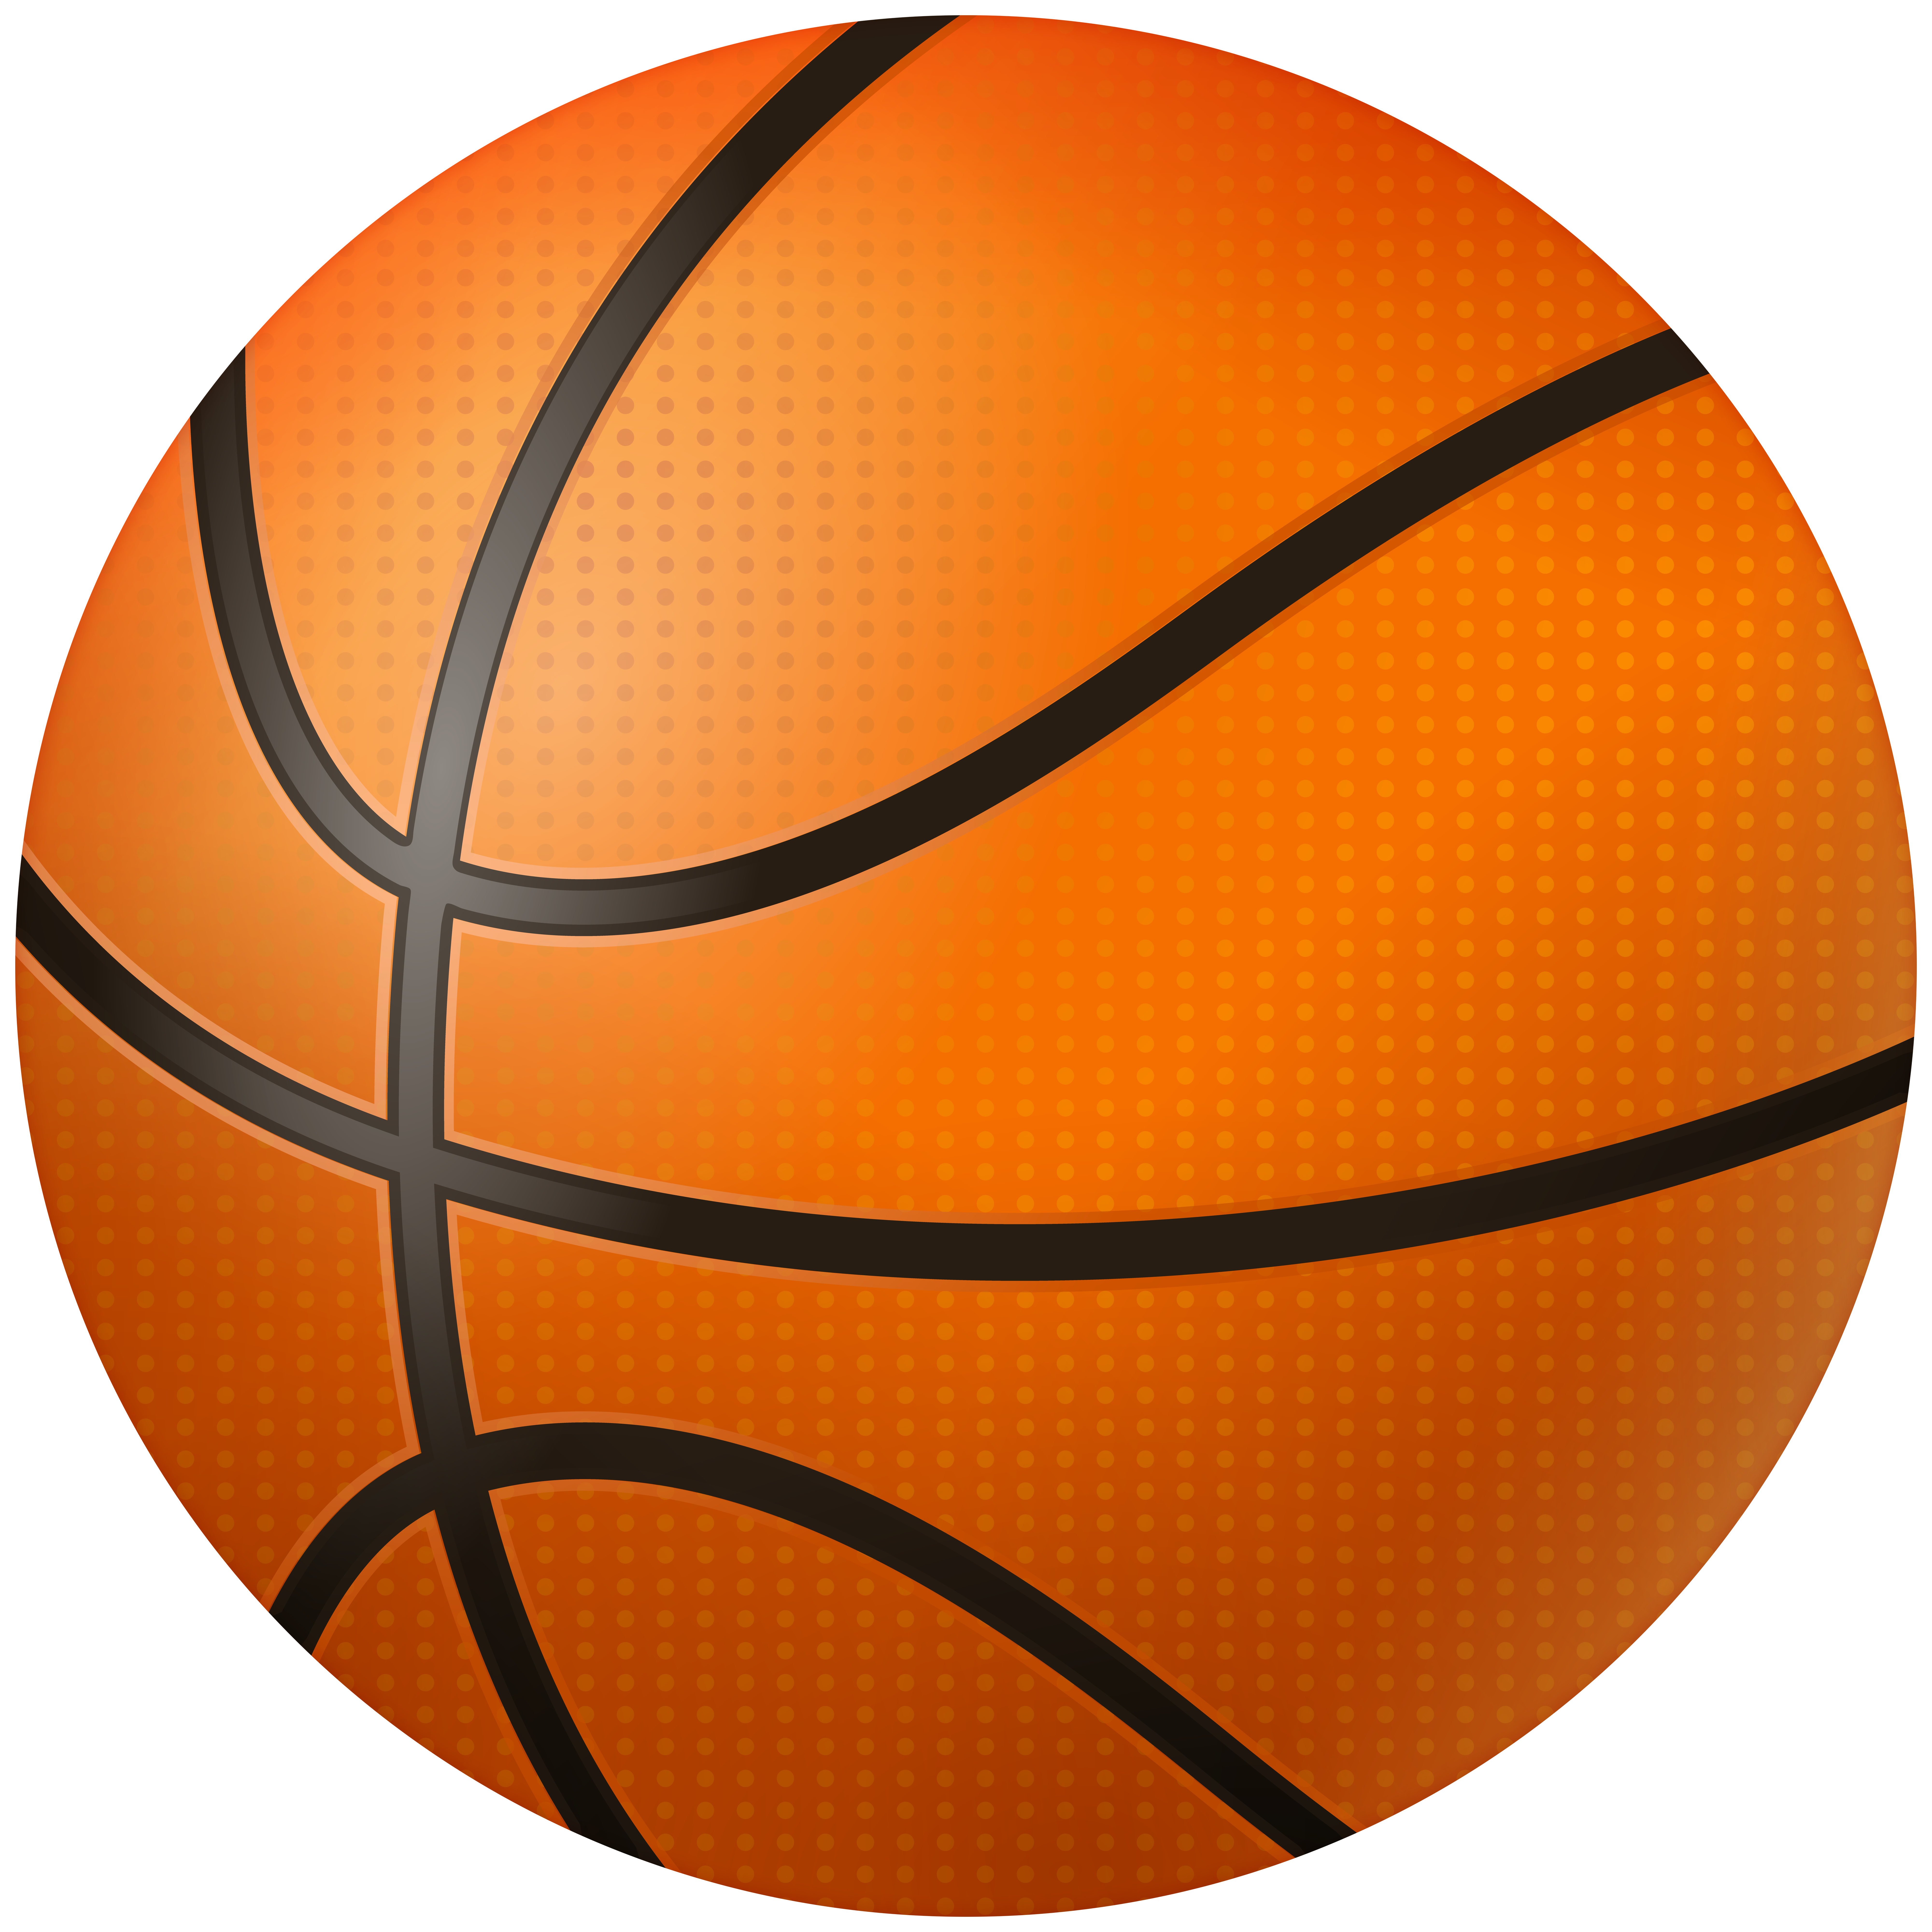 Basketball Ball Clipart Image